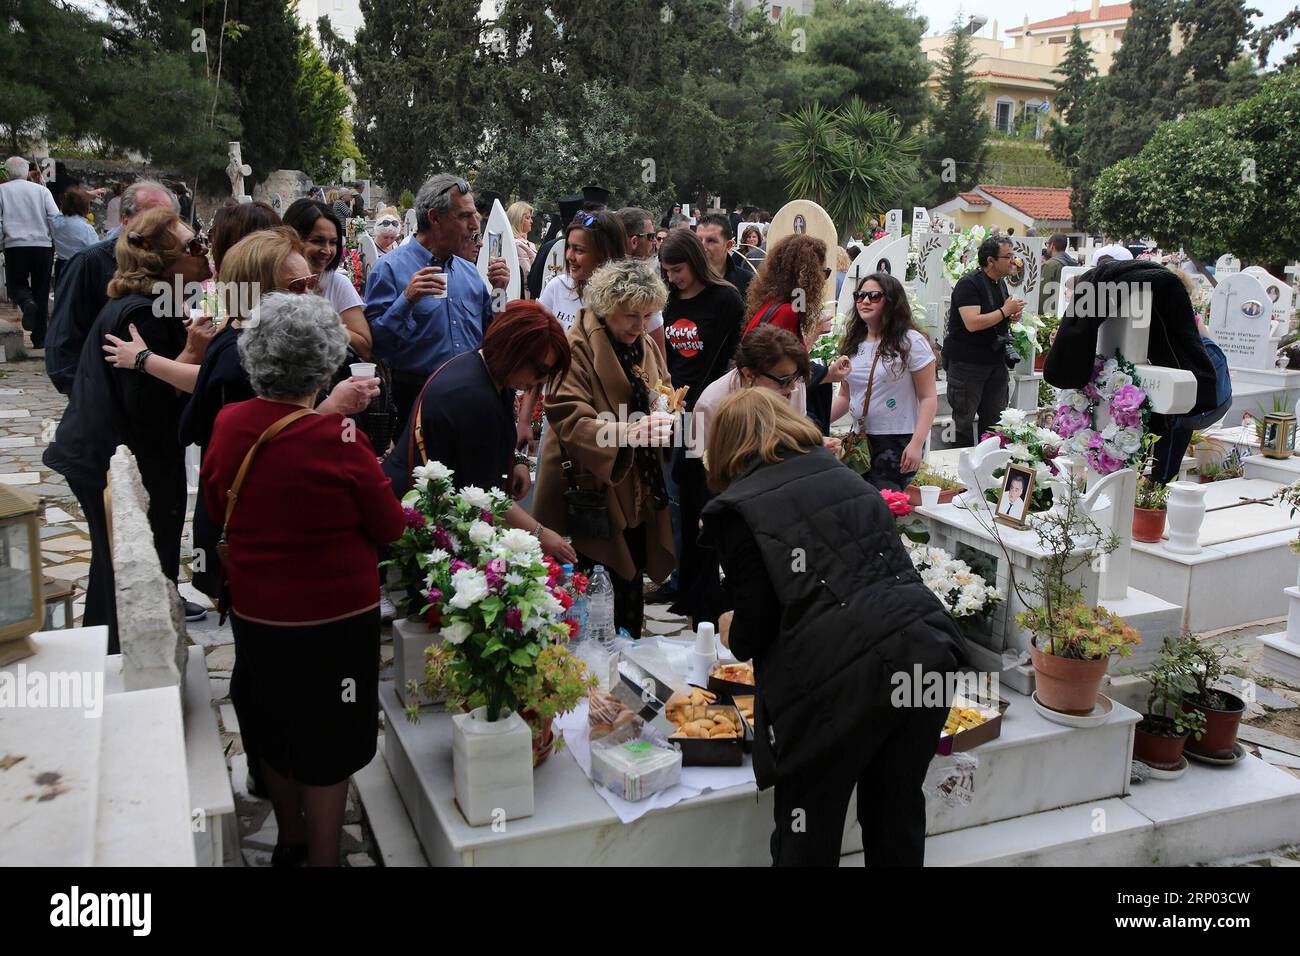 (180415) -- ATENE, 15 aprile 2018 -- i greci si riuniscono in un cimitero per onorare i loro cari defunti ad Atene, in Grecia, il 15 aprile 2018. I cimiteri di tutto il mondo sono legati al dolore della perdita e alle lacrime di dolore. Per migliaia di greci pontiani, un gruppo eticamente vissuto per secoli sulle rive del Mar Nero e ora disperso in tutto il mondo, una volta all'anno, i luoghi di sepoltura dei loro cari defunti vengono trasformati in un luogo di gioia. La prima domenica dopo la Pasqua cristiana greco-ortodossa le famiglie si riuniscono nei cimiteri, mettono la tavola sulle tombe di marmo, mangiano prelibatezze, bevono vino, Foto Stock